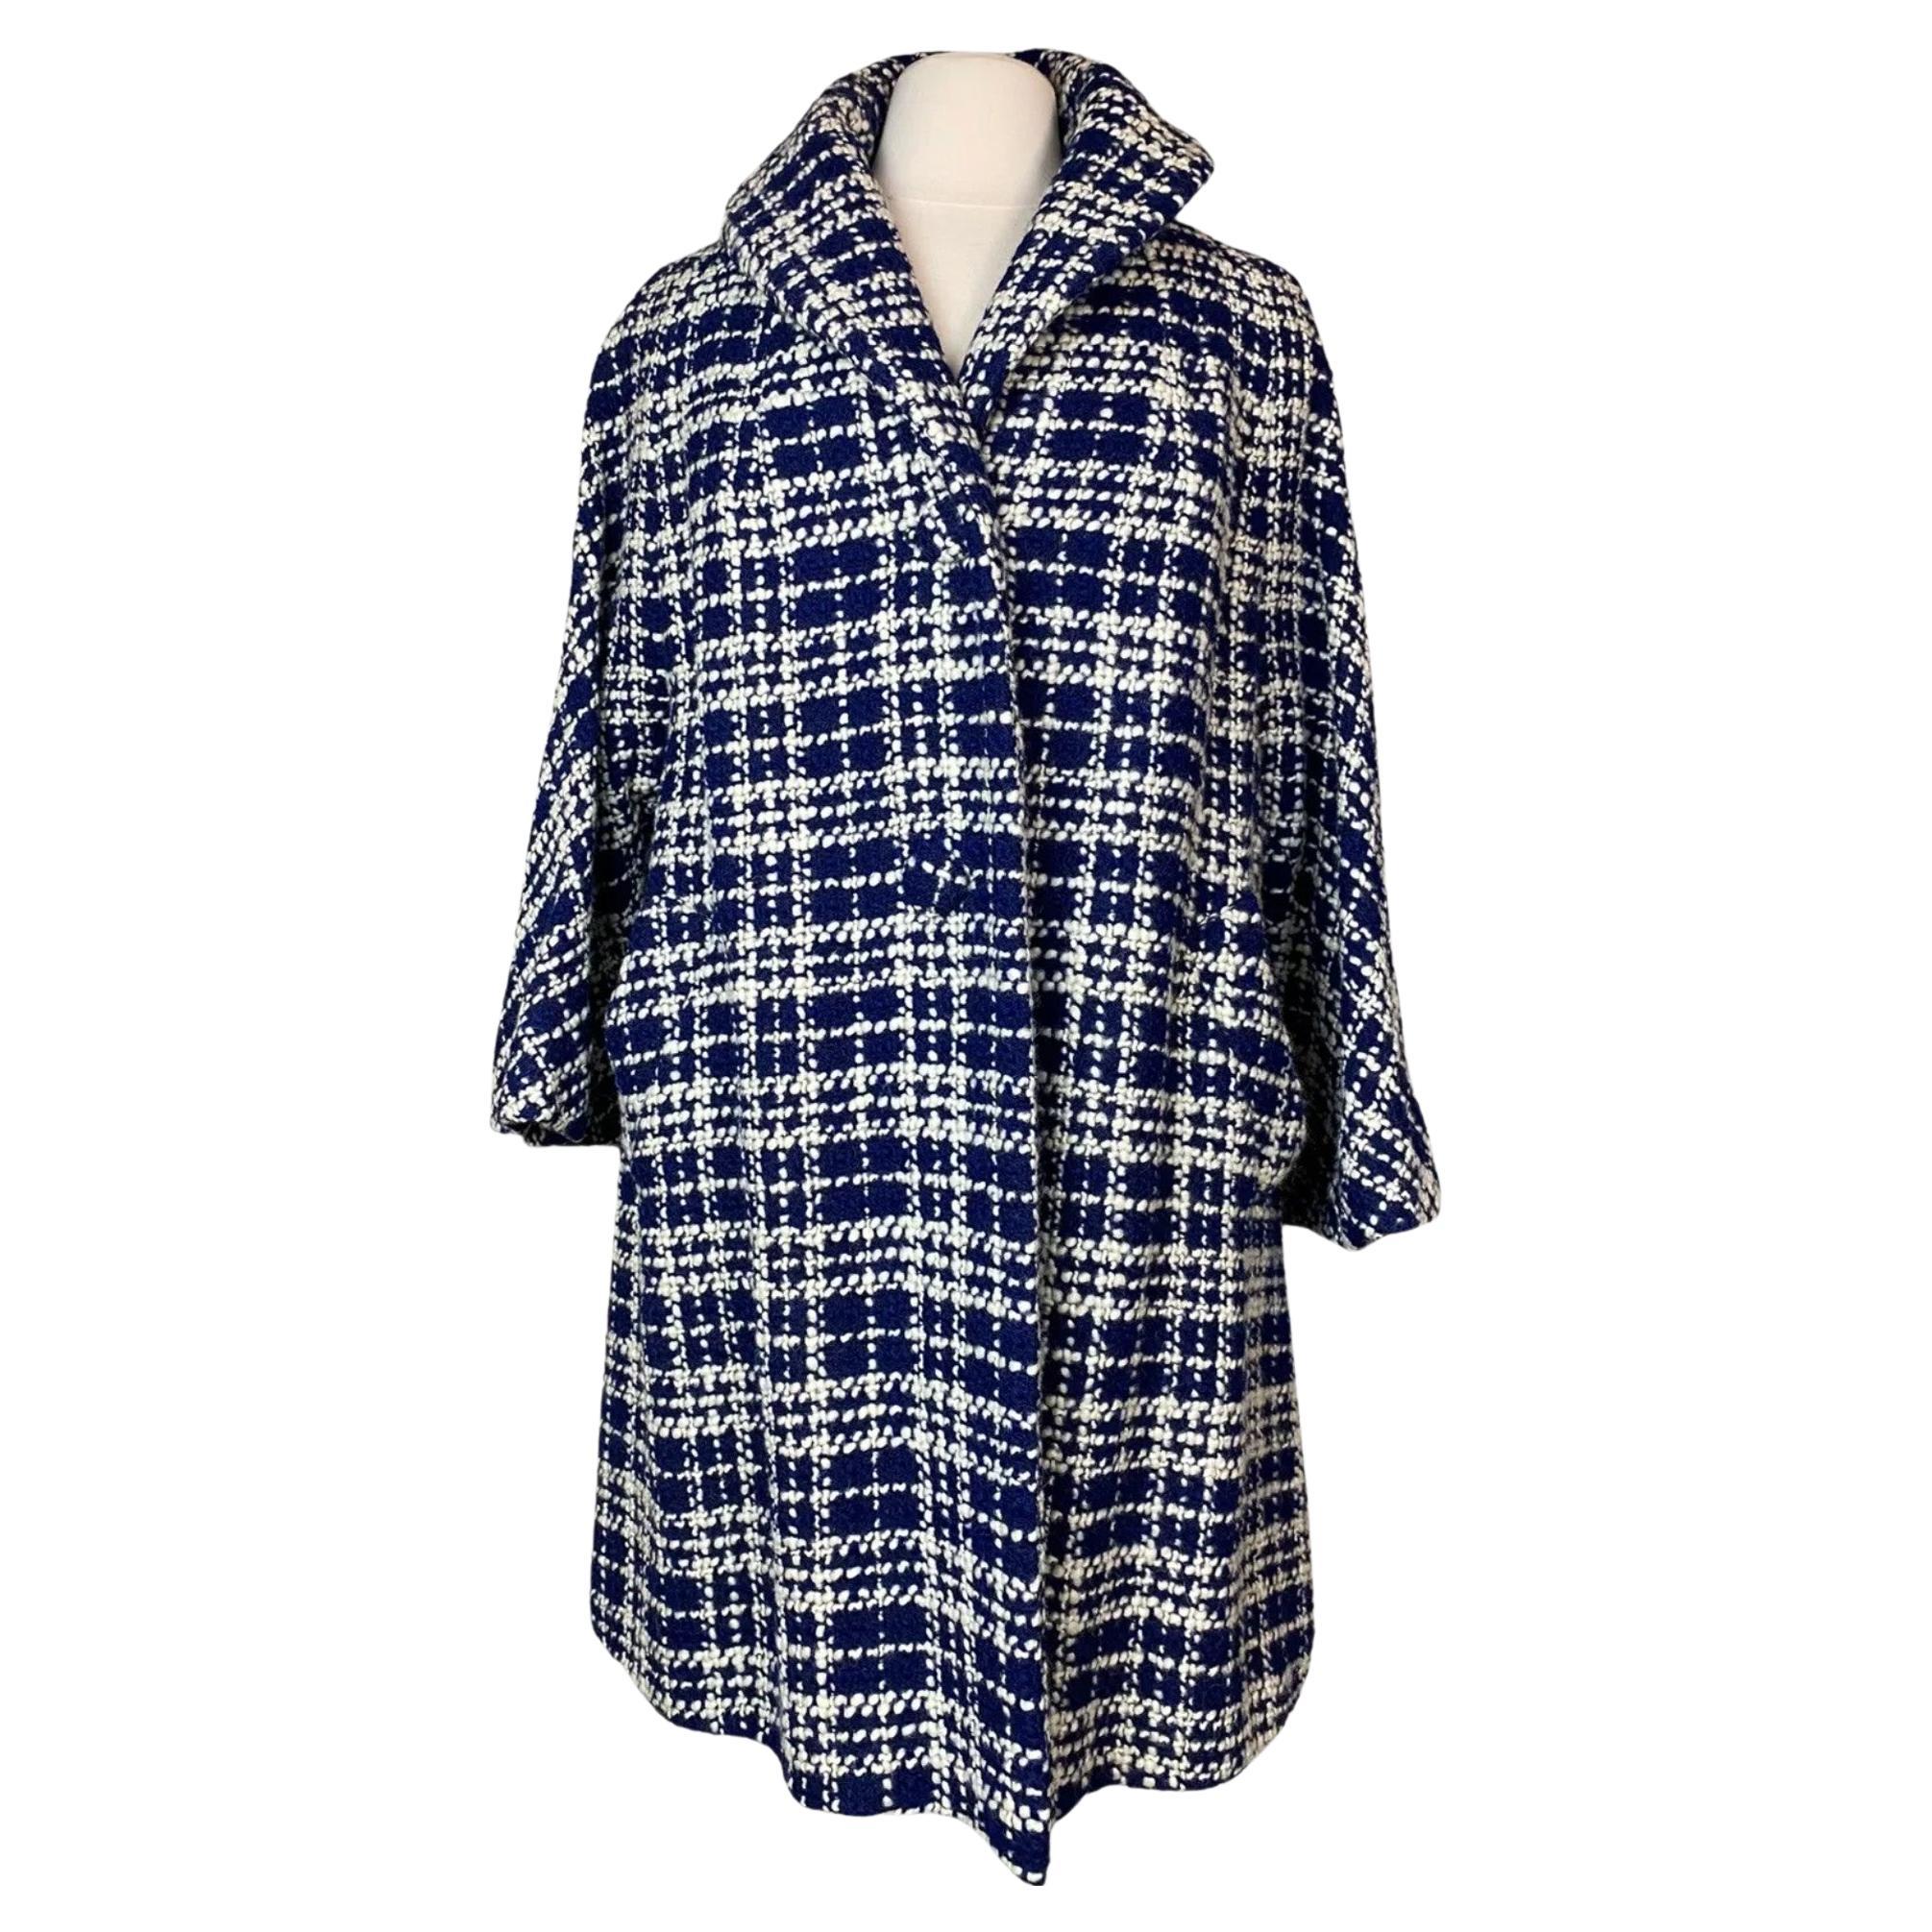 Manteau trapèze Lilli Ann des années 1960, bleu et blanc, col châle en laine MED/LG